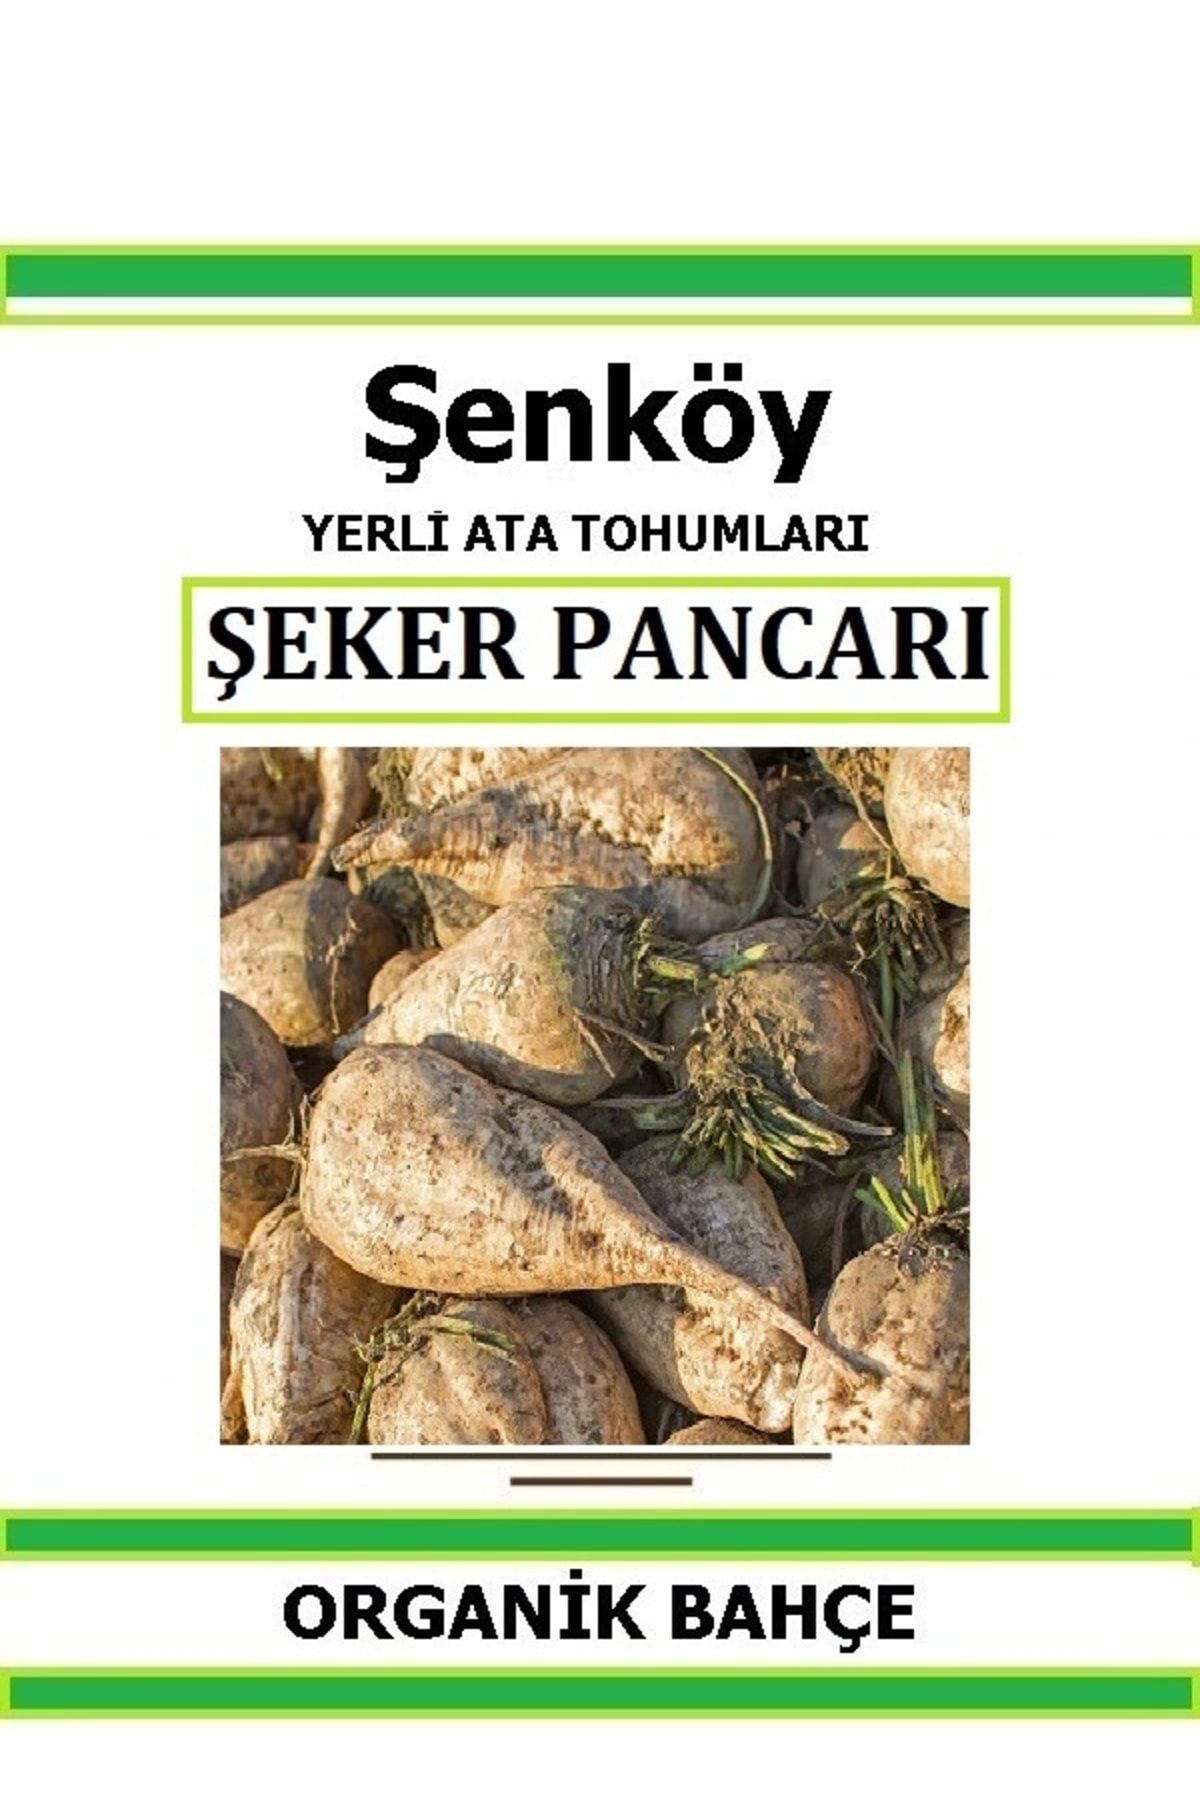 Şenköy Yerli Şeker Pancarı Tohumu Doğal Ata Tohum Pakette 5 gr 250 Tohum Hediye Sebze Tohumu